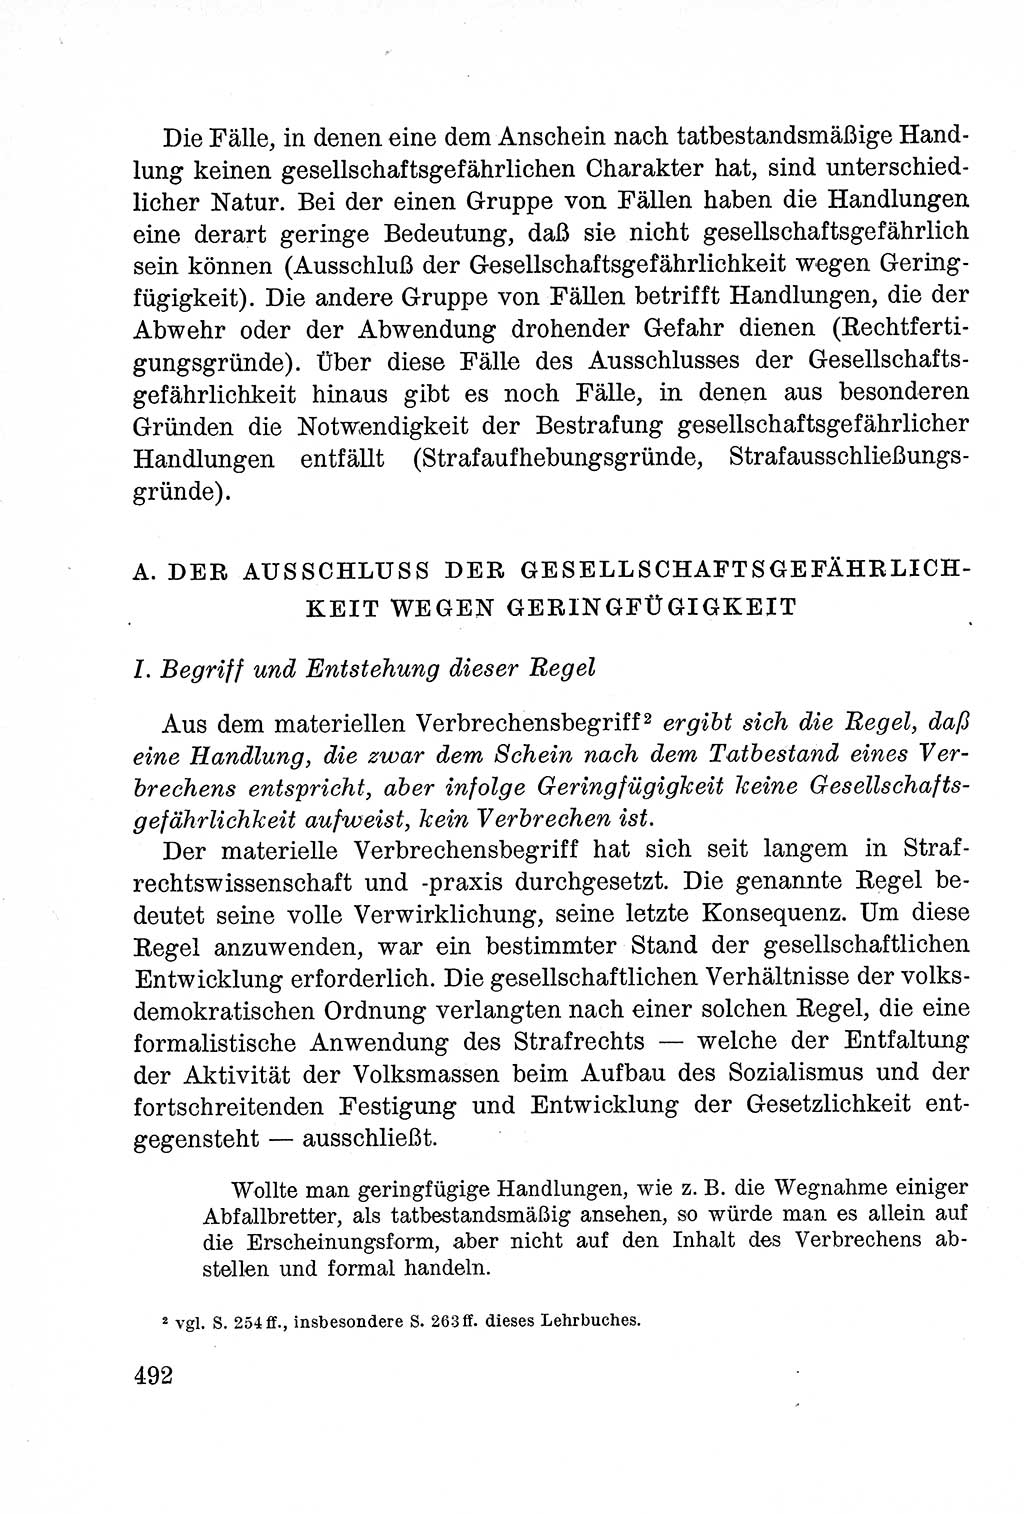 Lehrbuch des Strafrechts der Deutschen Demokratischen Republik (DDR), Allgemeiner Teil 1957, Seite 492 (Lb. Strafr. DDR AT 1957, S. 492)